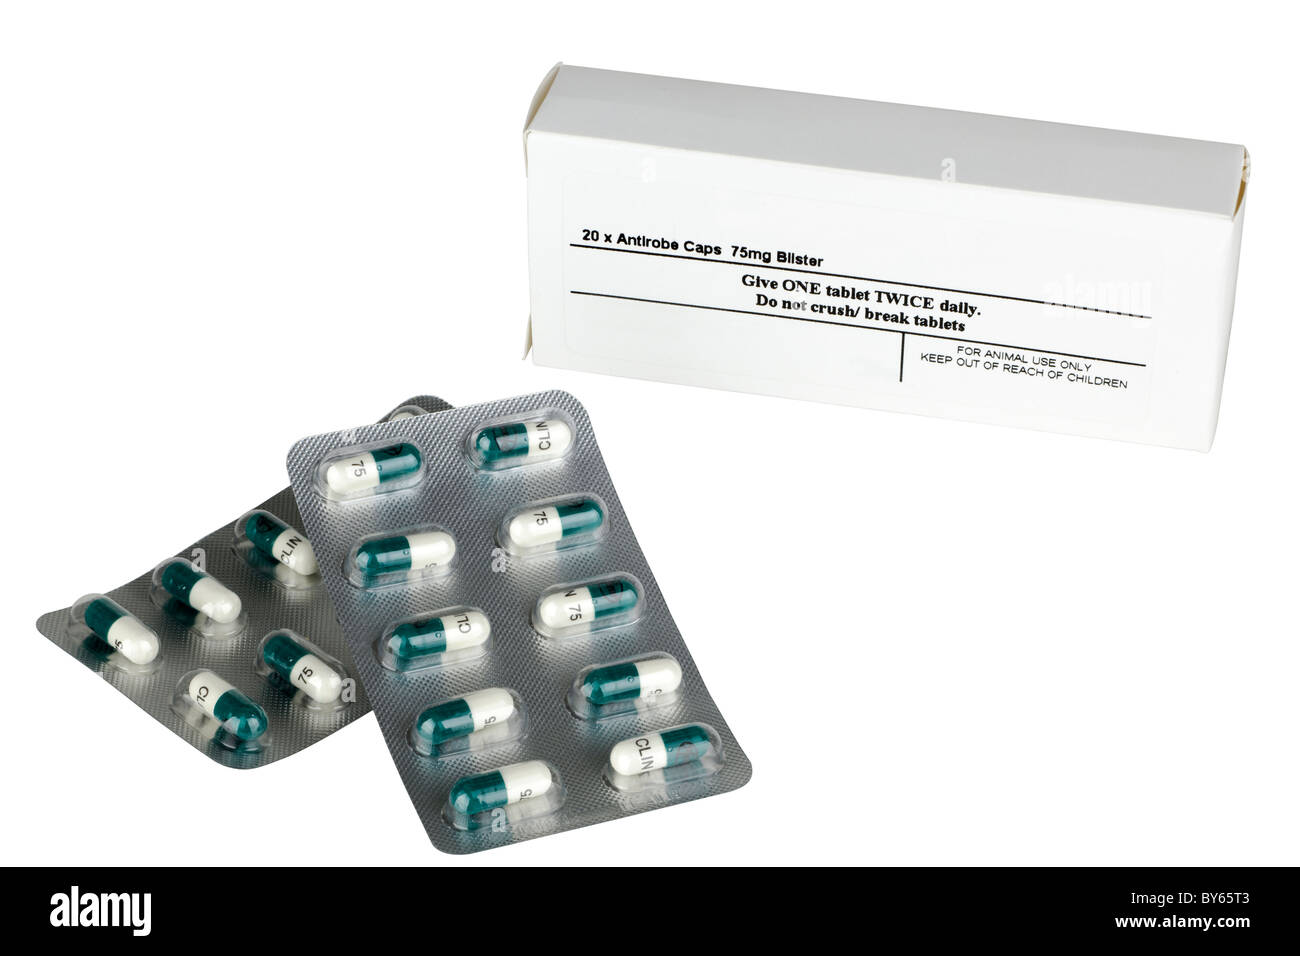 Blind tillid system Frustration 20 Blister Pack von Antirobe Kapseln und Schachtel Antibiotika für Hunde  Stockfotografie - Alamy